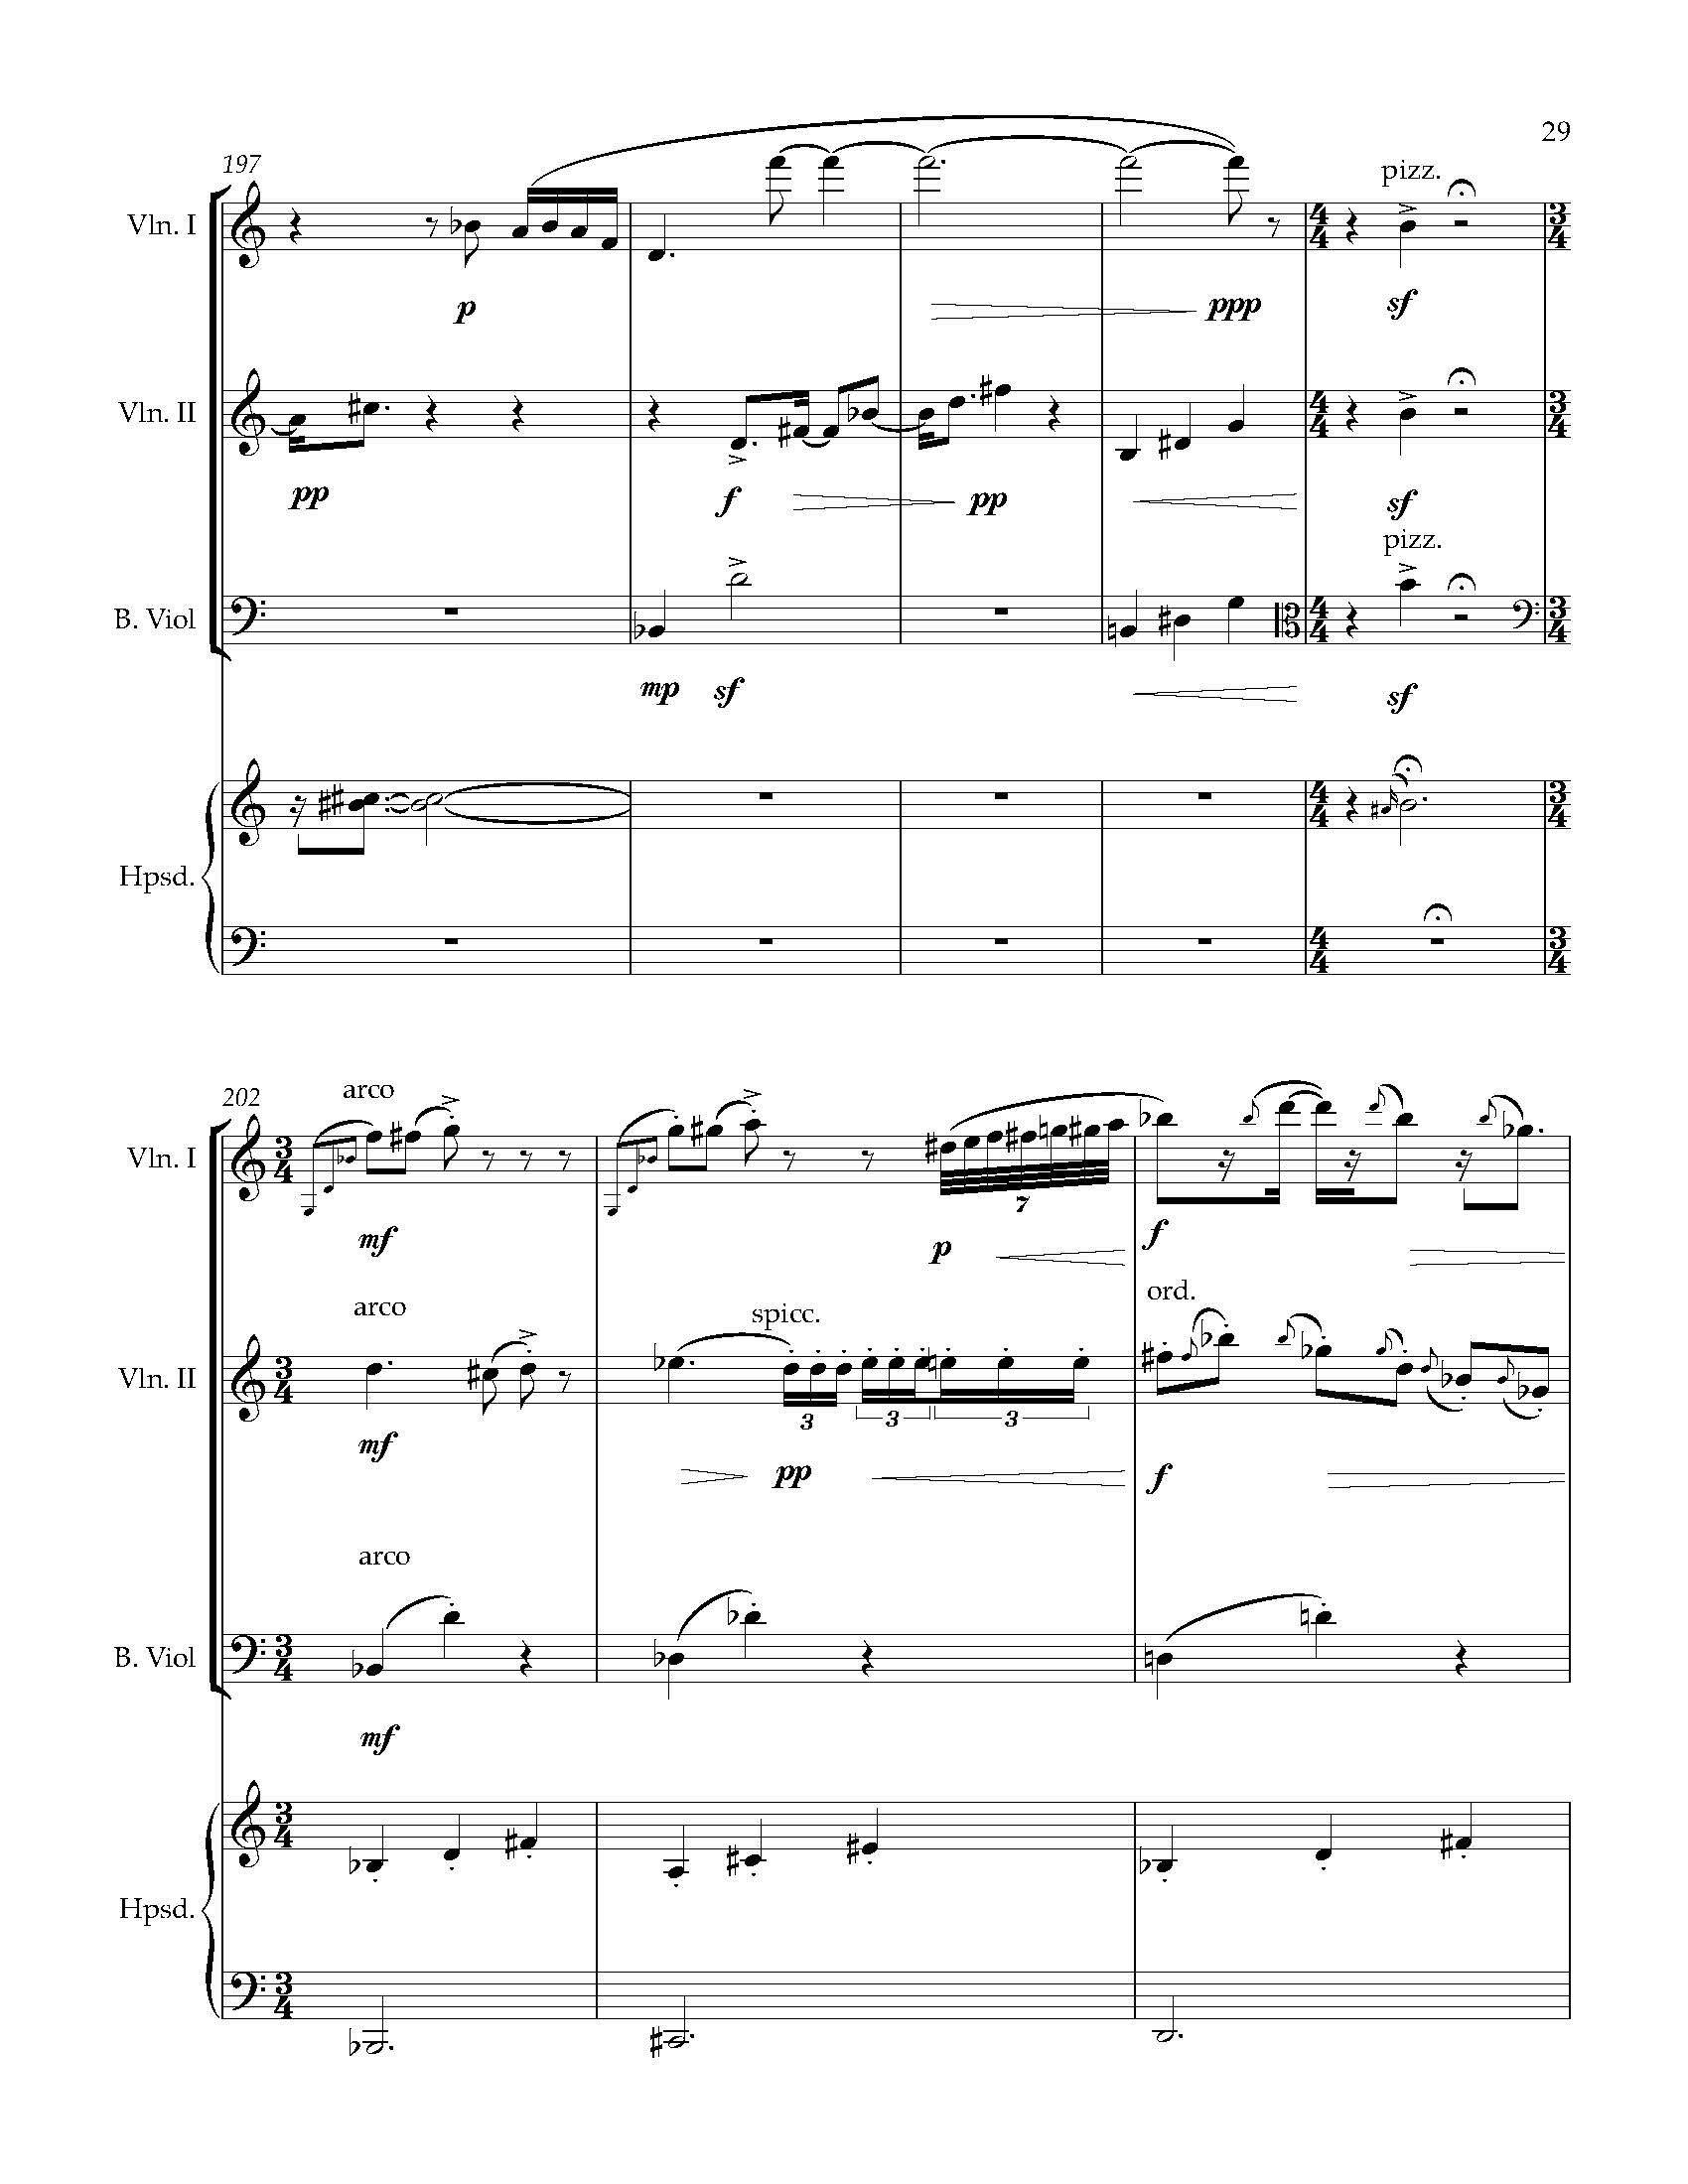 Sonata Sonare - Complete Score_Page_35.jpg